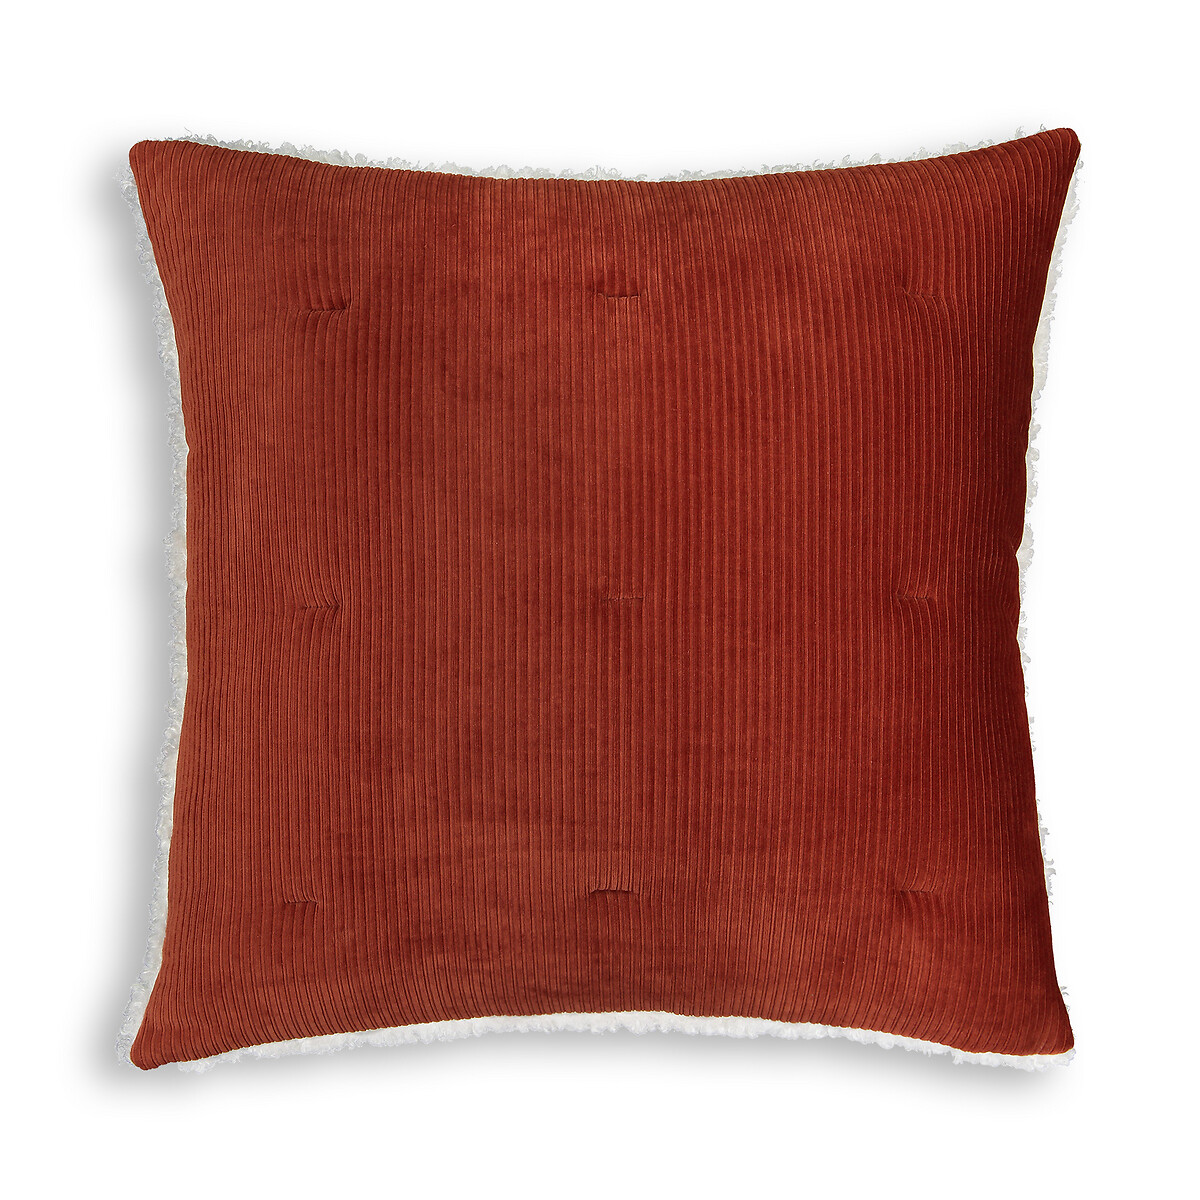 Чехол LaRedoute На квадратную подушку Ouate Velours 65 x 65 см оранжевый, размер 65 x 65 см - фото 1